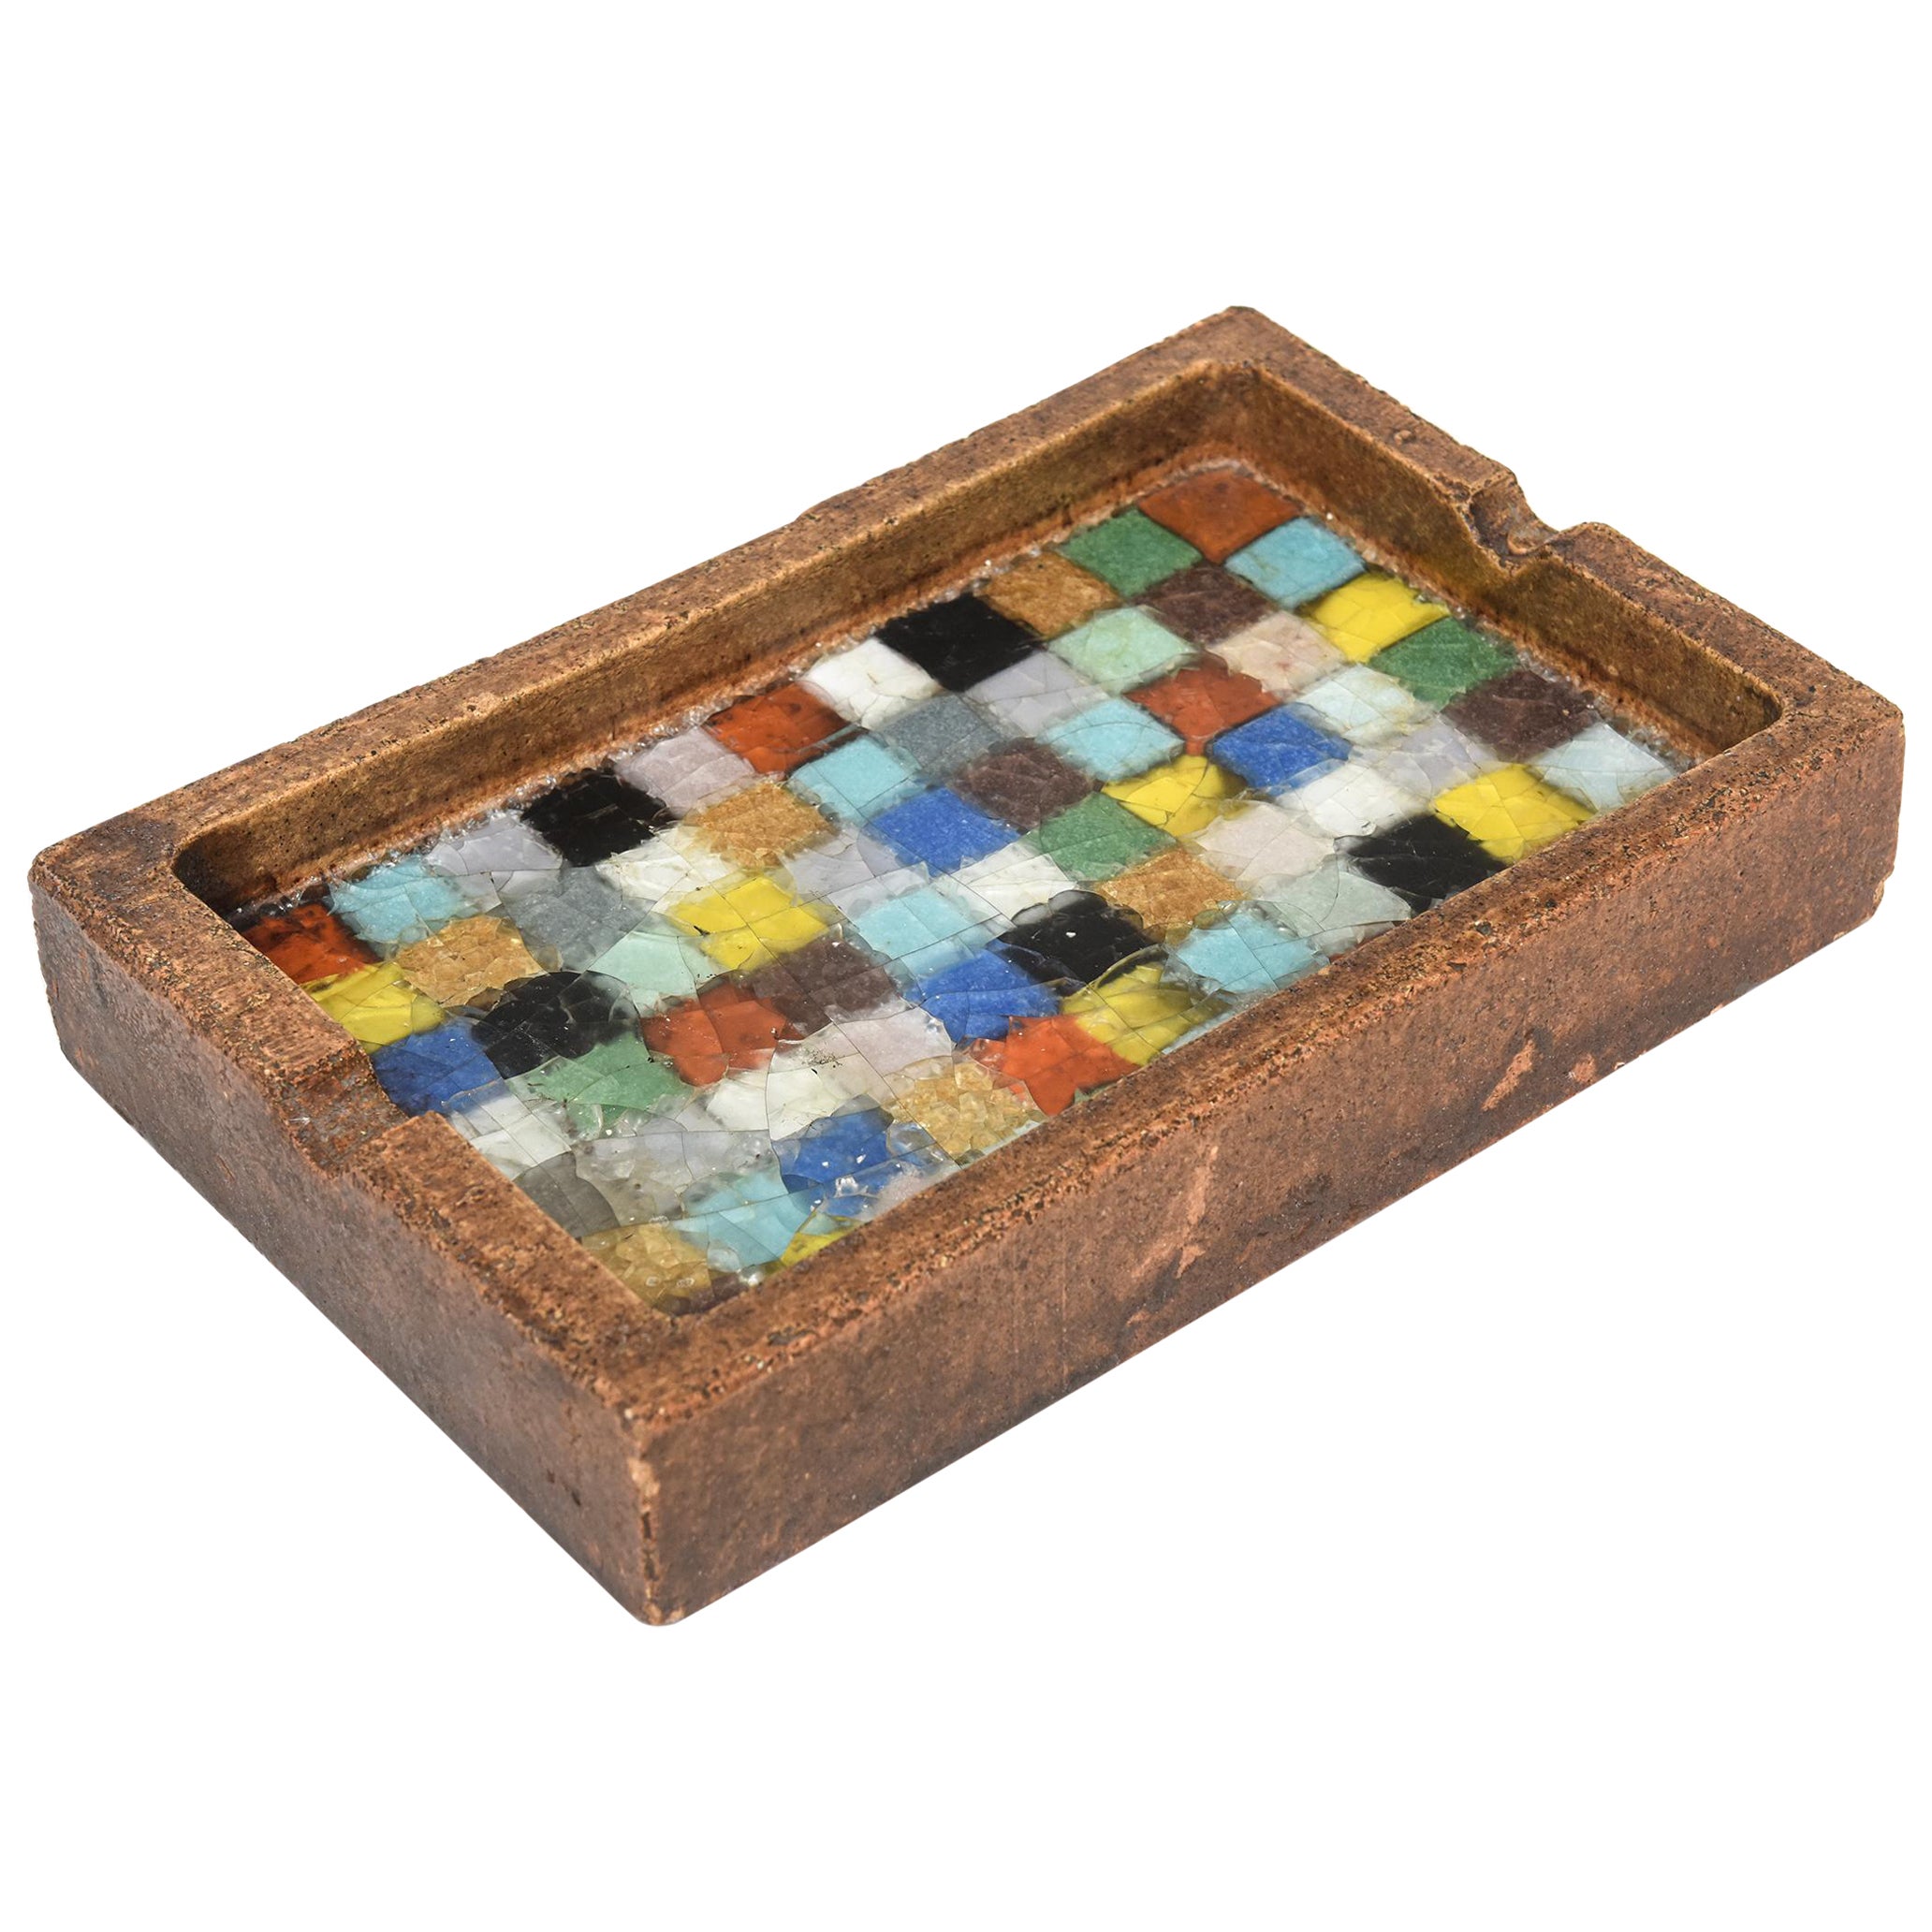 60er Jahre Italienische Keramik und geschmolzenes Glas Mosaik Aschenbecher / Tablett von Bitossi für Raymor